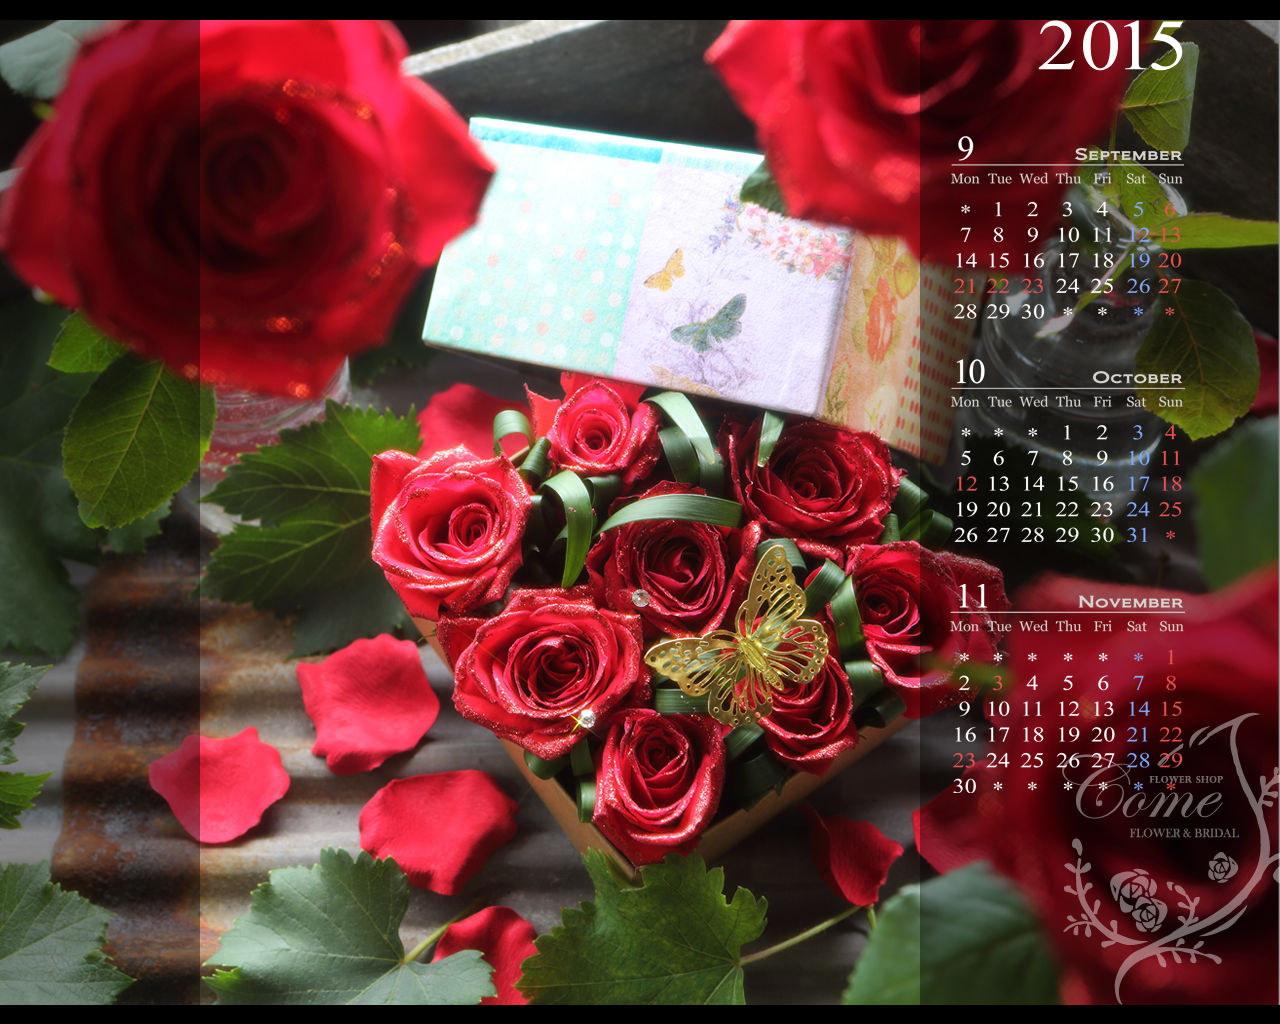 15年壁紙カレンダープレゼント 無料 花の写真を使った壁紙カレンダーを無料でダウンロード フラワーショップ花夢